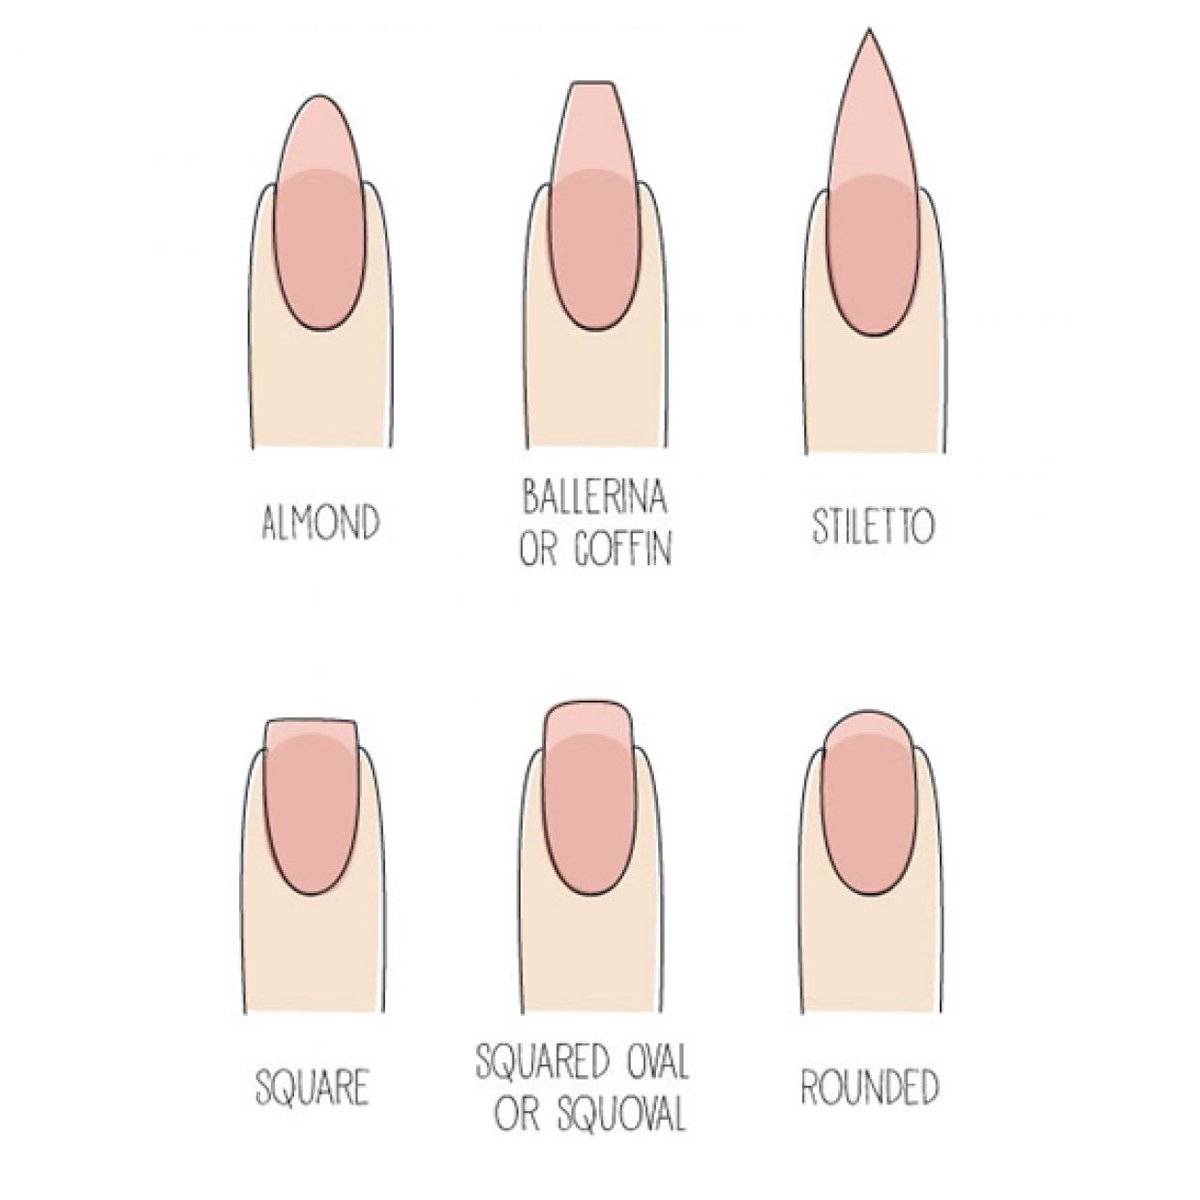 Форма ногтей: фото, как сделать правильную, красивую и модную форму